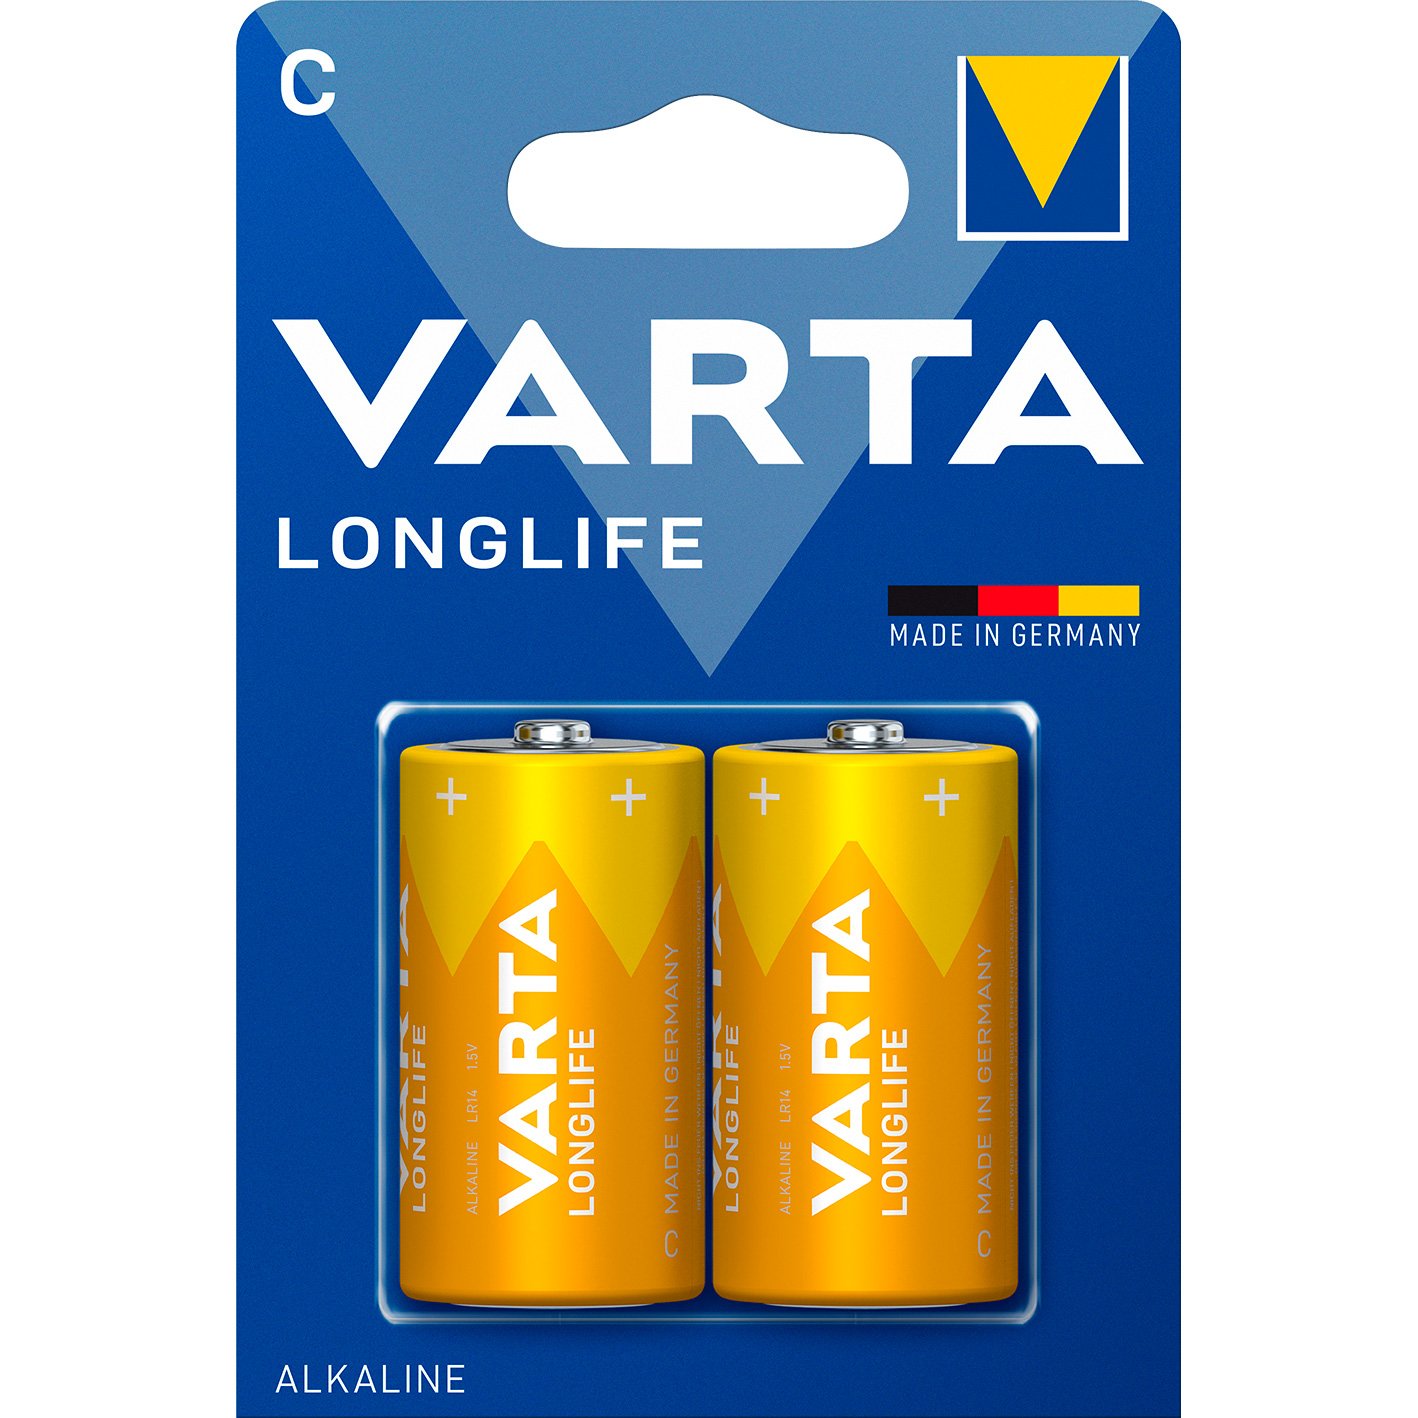 VARTA LongLife batteri C/LR14 1.5 v 2 stk